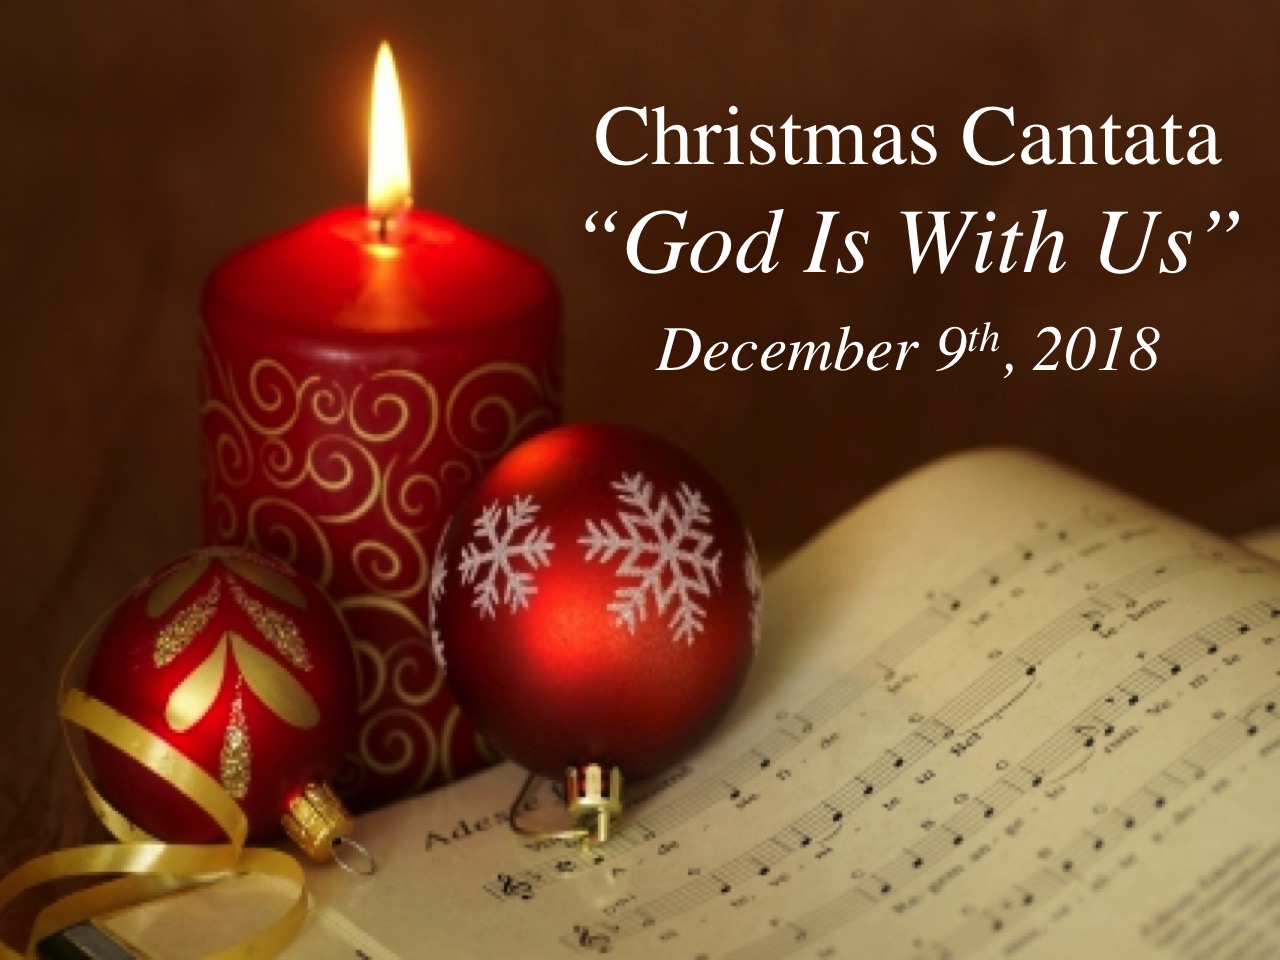 Christmas Cantata Presbyterian Church of Jackson Hole